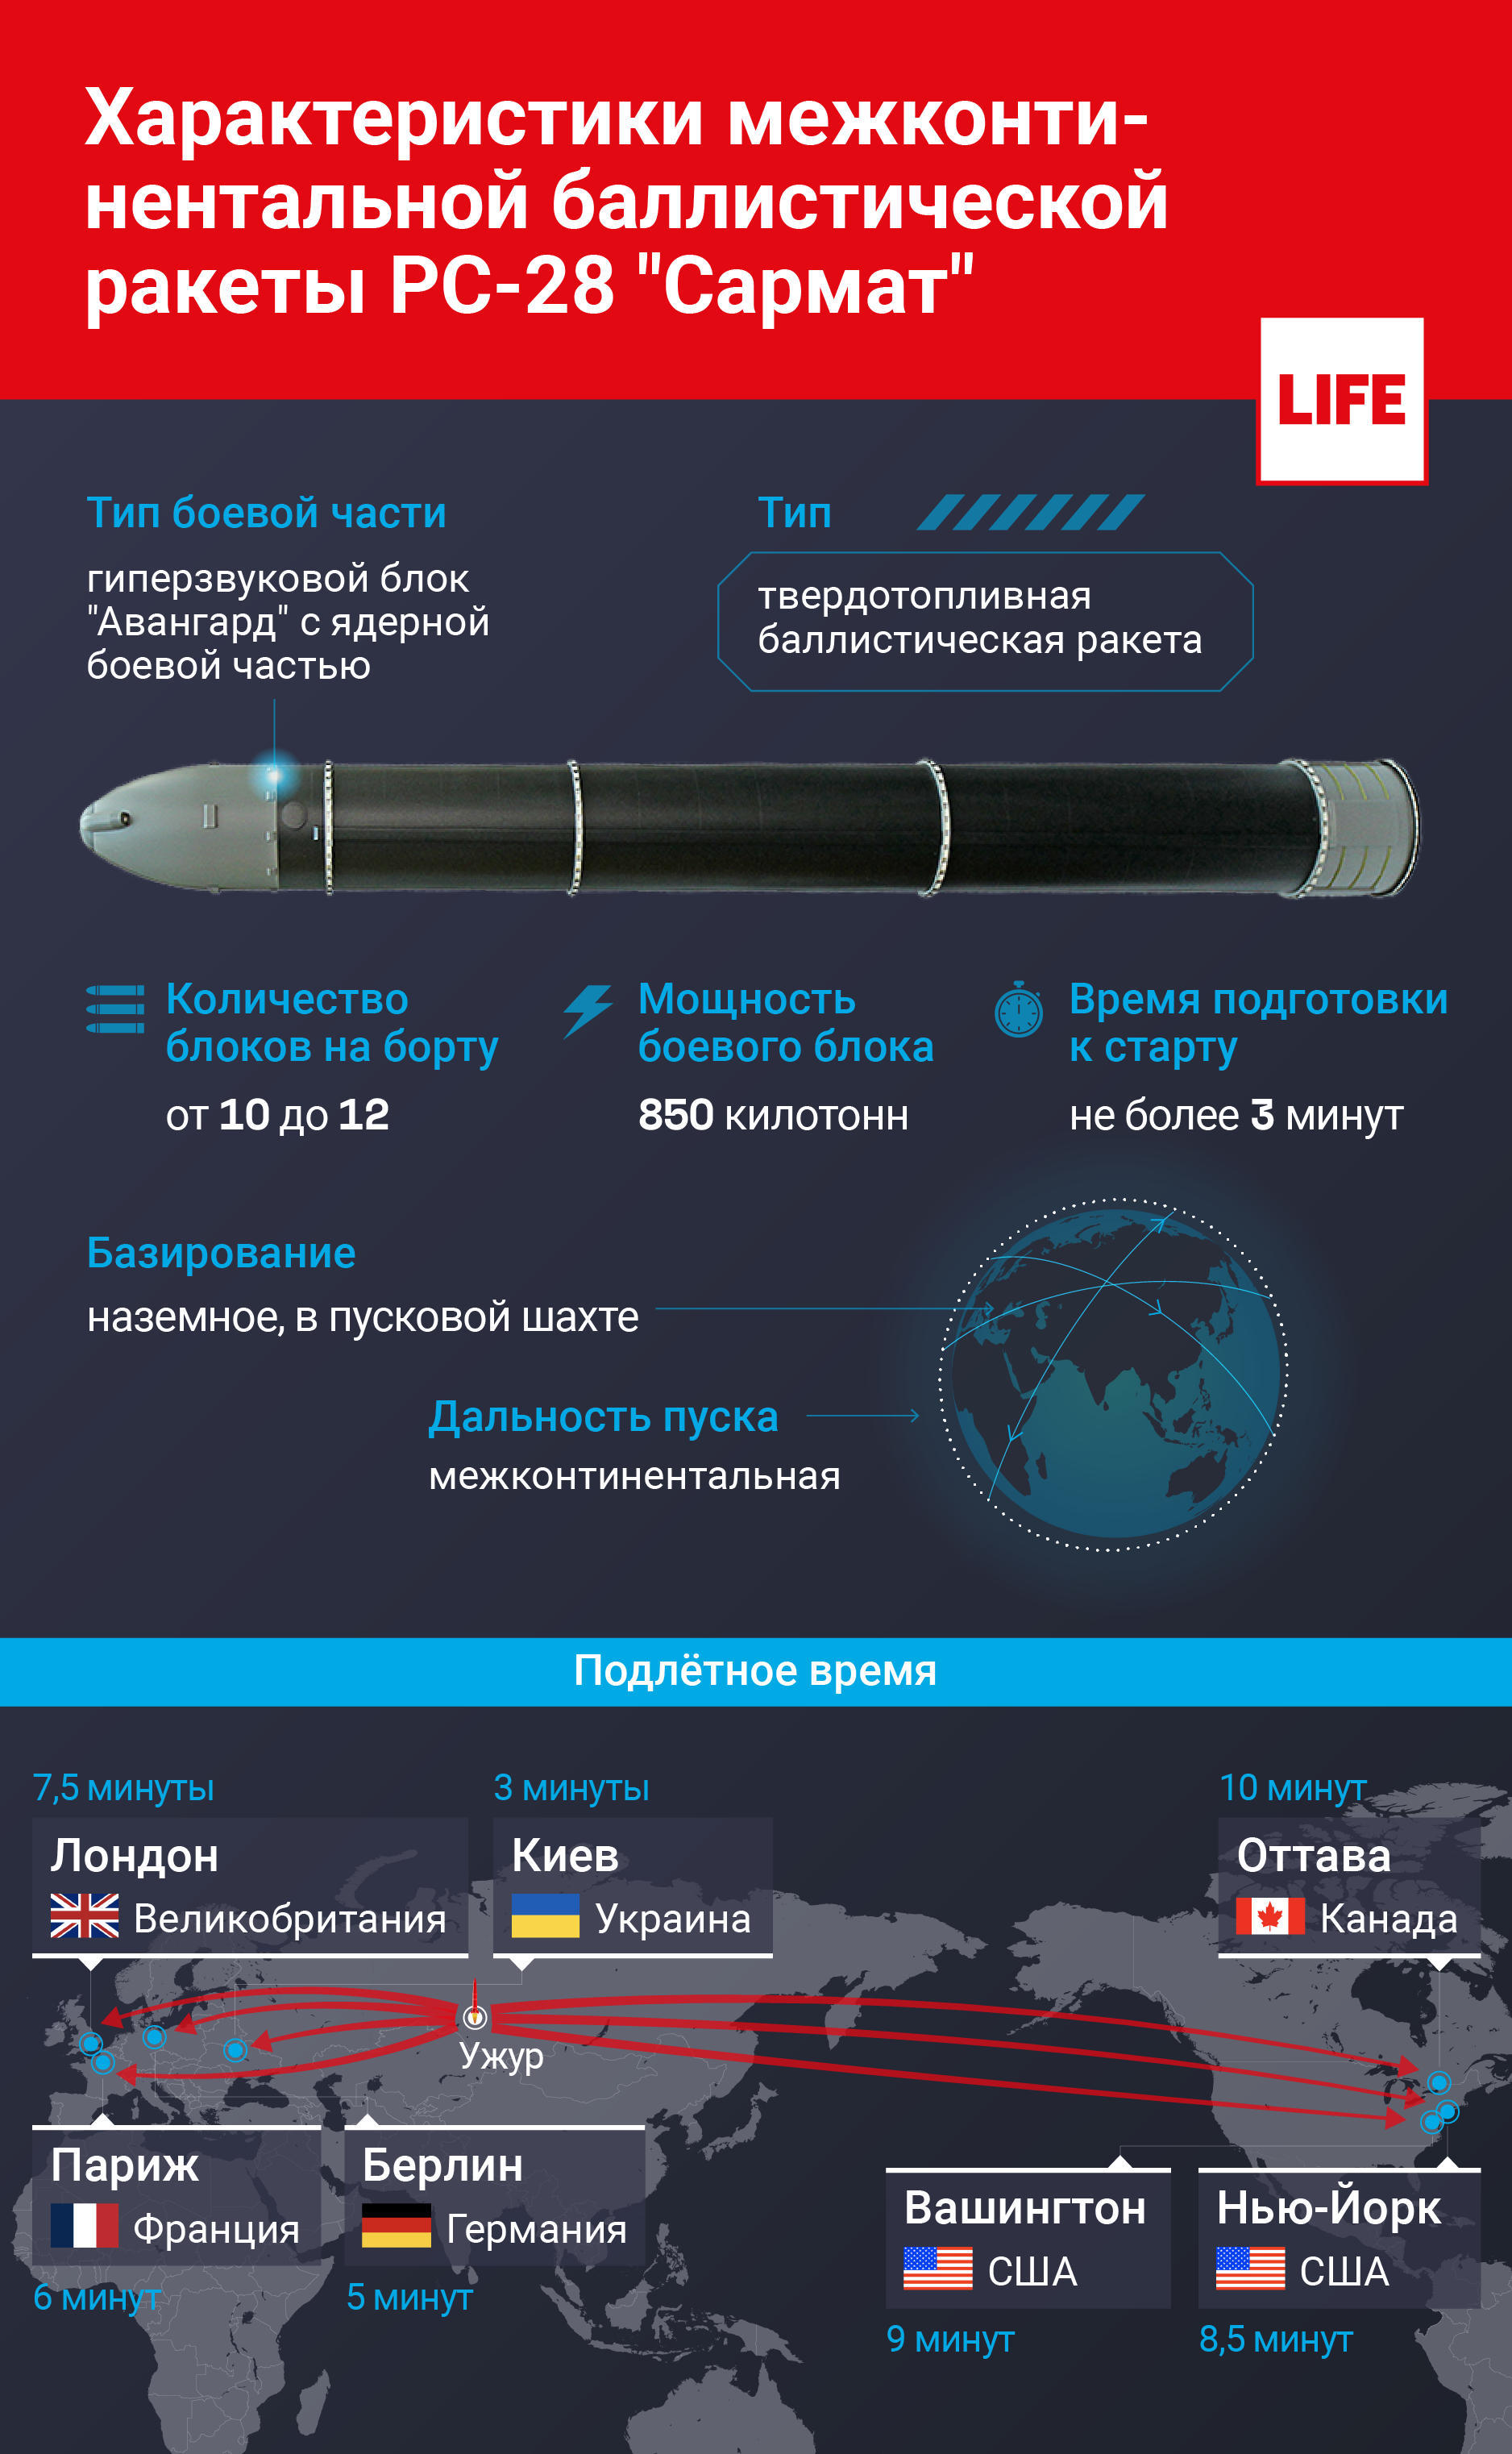 Характеристики межконтинентальной баллистической ракеты РС-28 "Сармат". Инфографика © LIFE